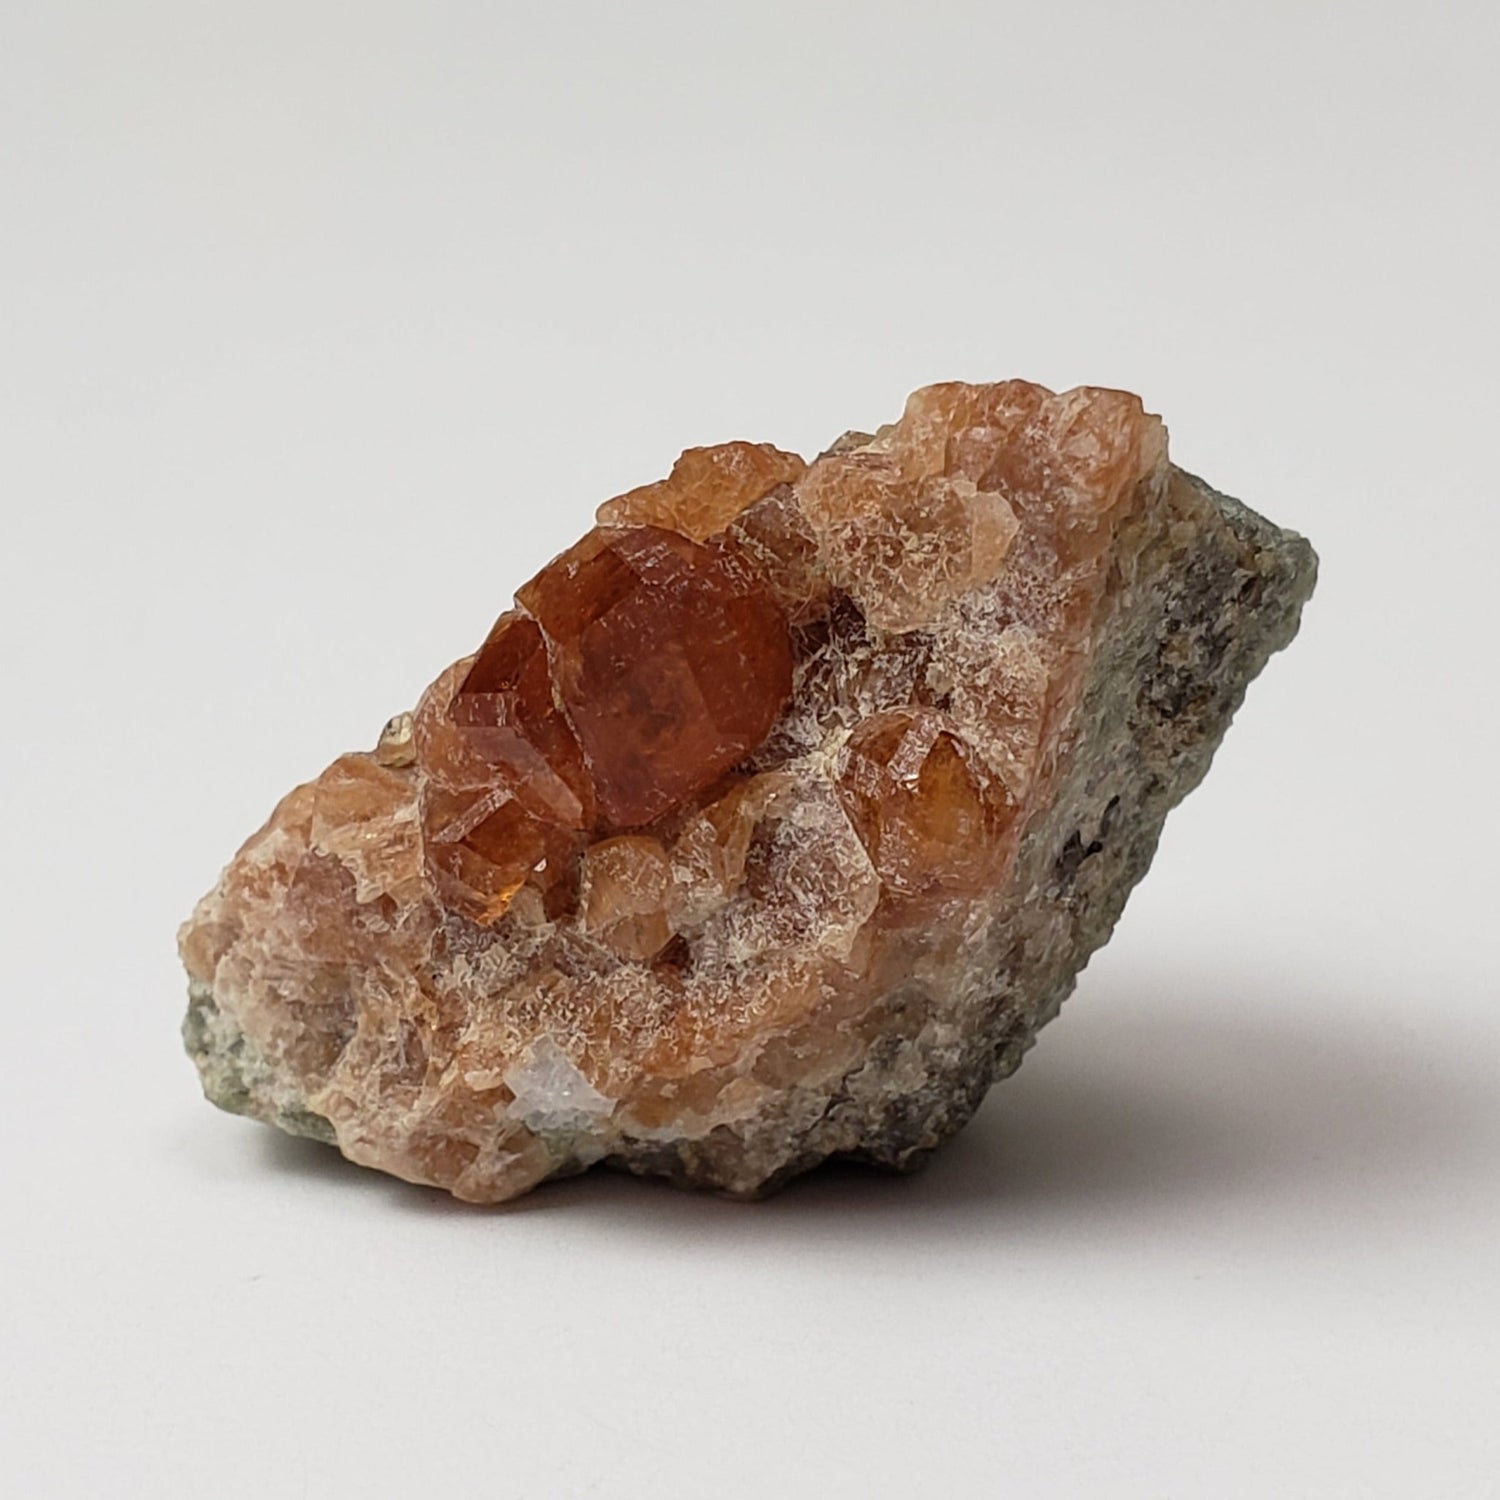 Grossular Hessonite Garnet | Perky Box Thumbnail Specimen | Eden Mills, VT USA